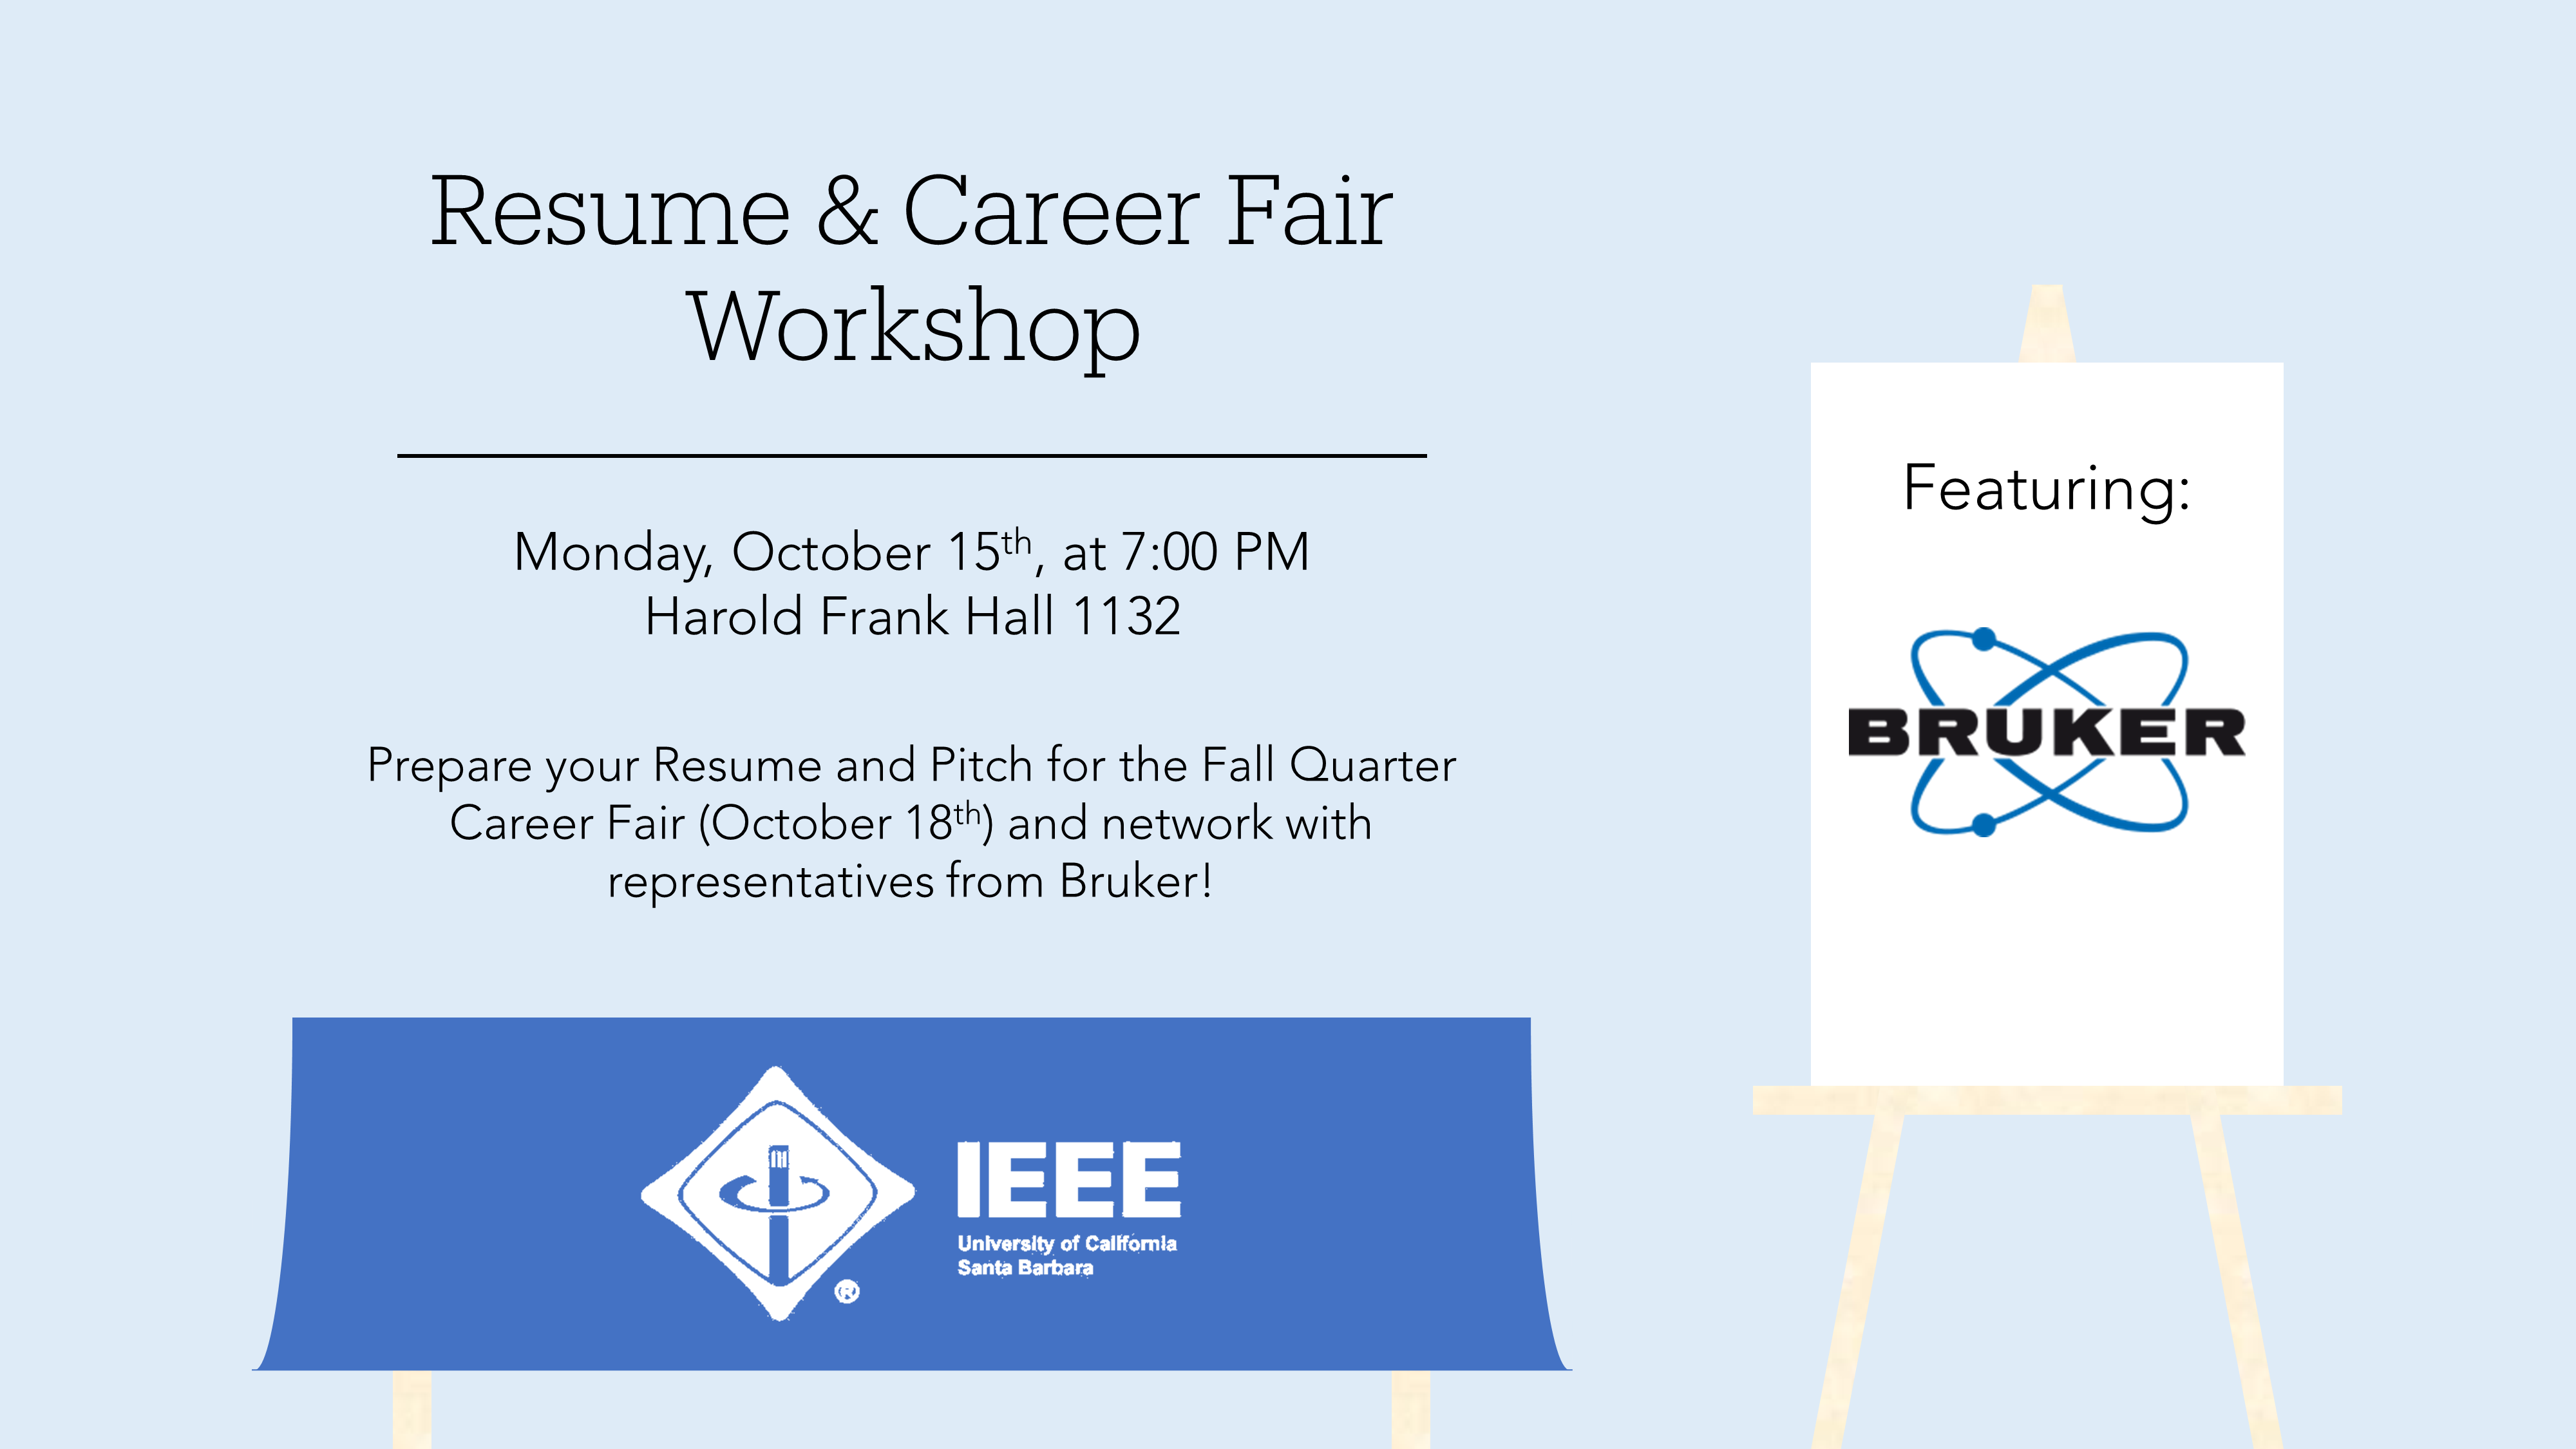 Resume & Career Fair Workshop with Bruker